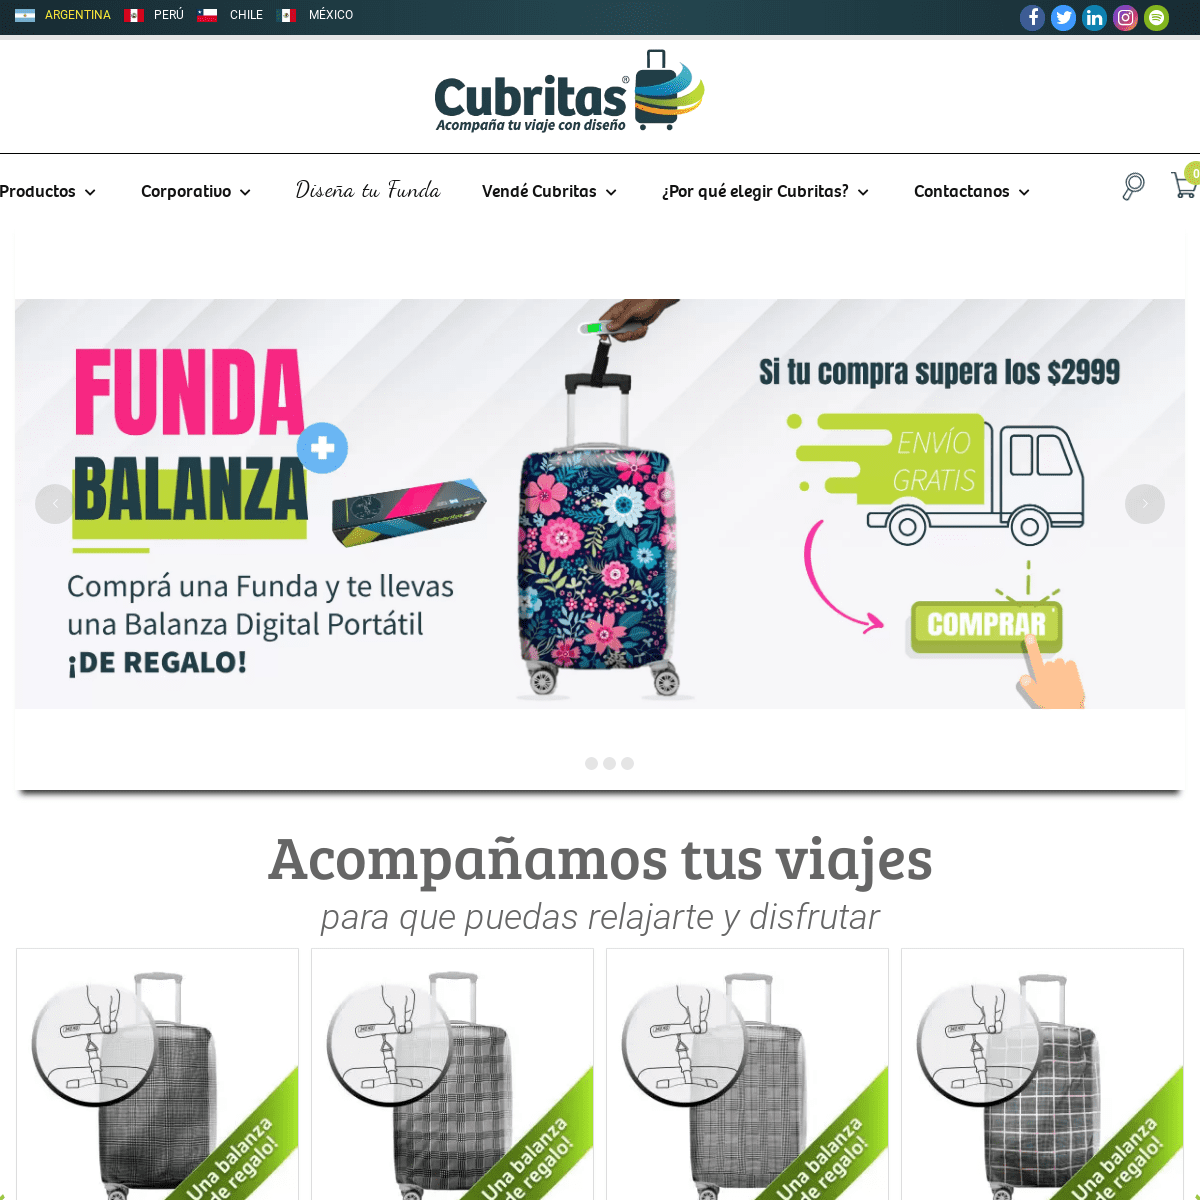 A complete backup of cubritas.com.ar